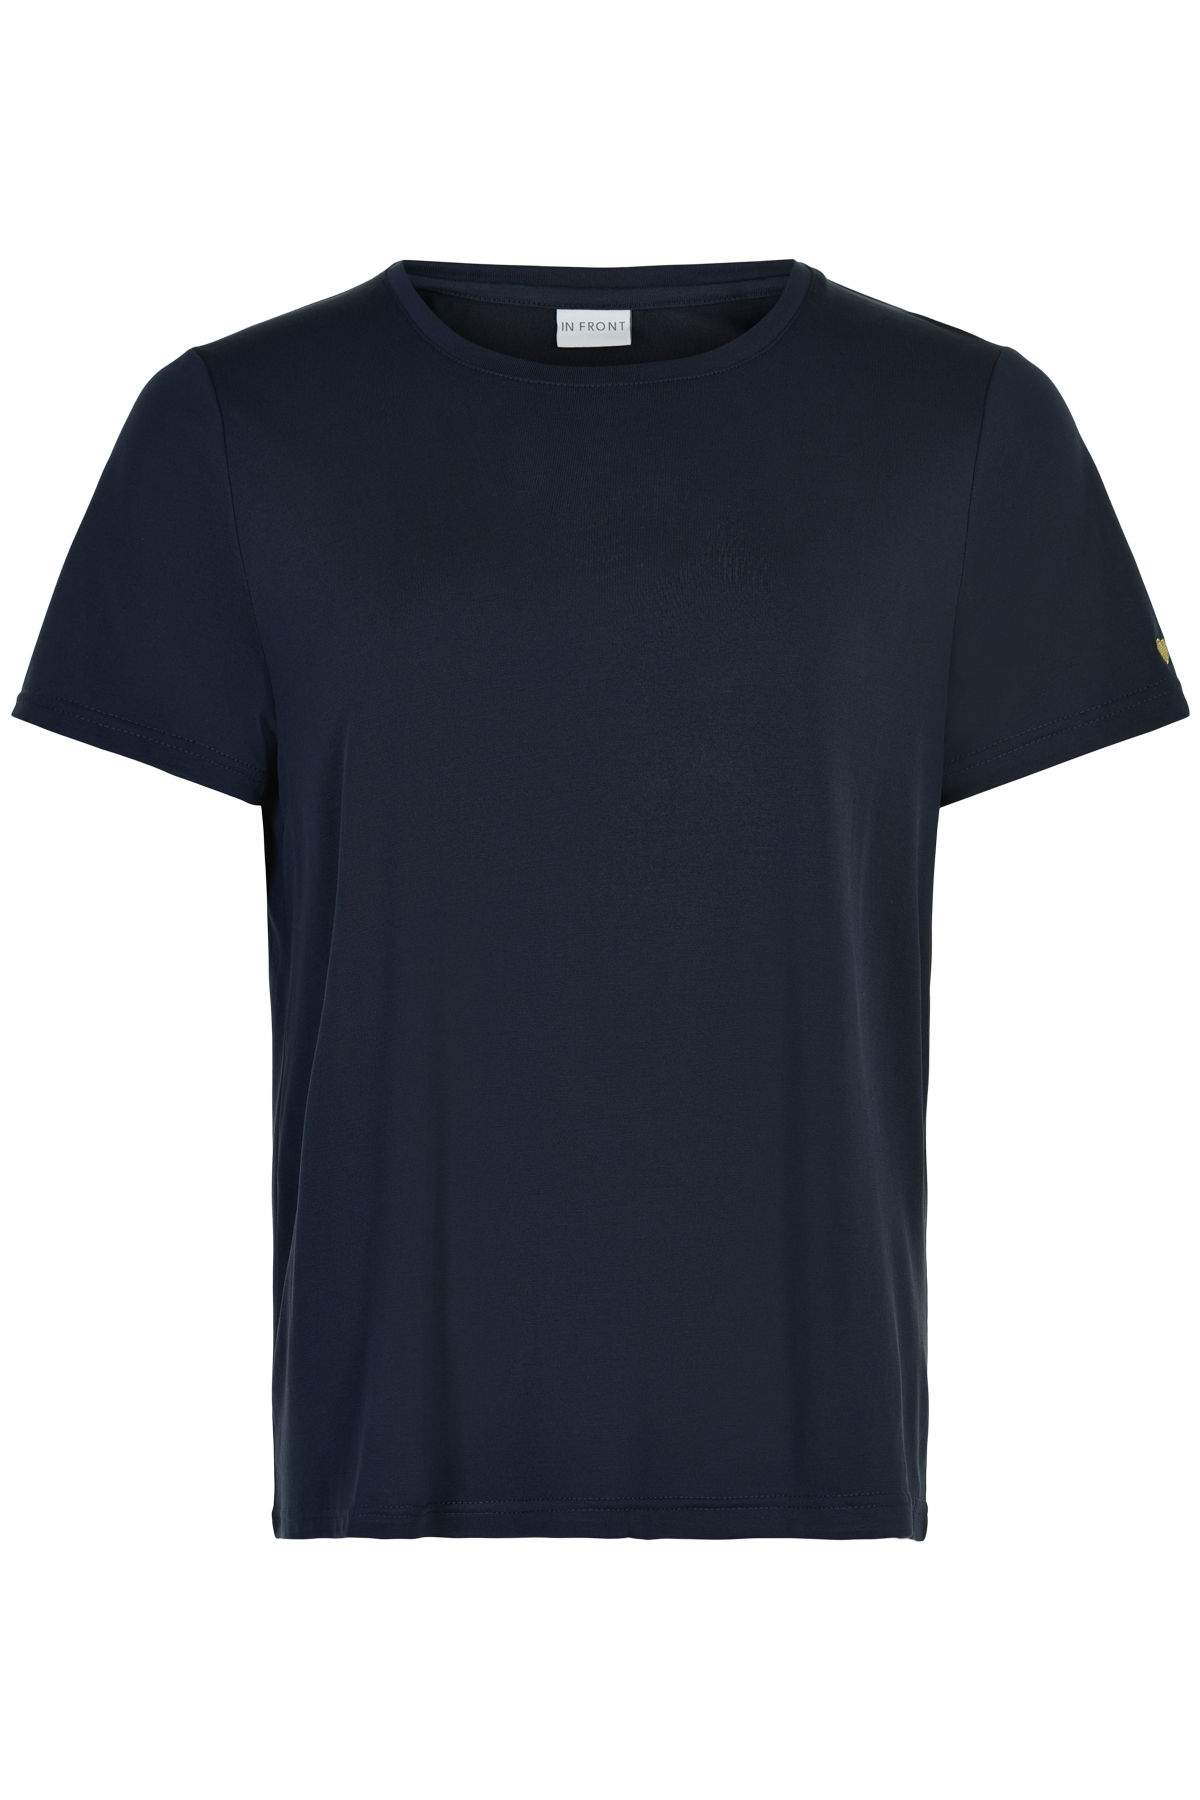 In Front Nina T-shirt, Farve: Blå, Størrelse: XL, Dame